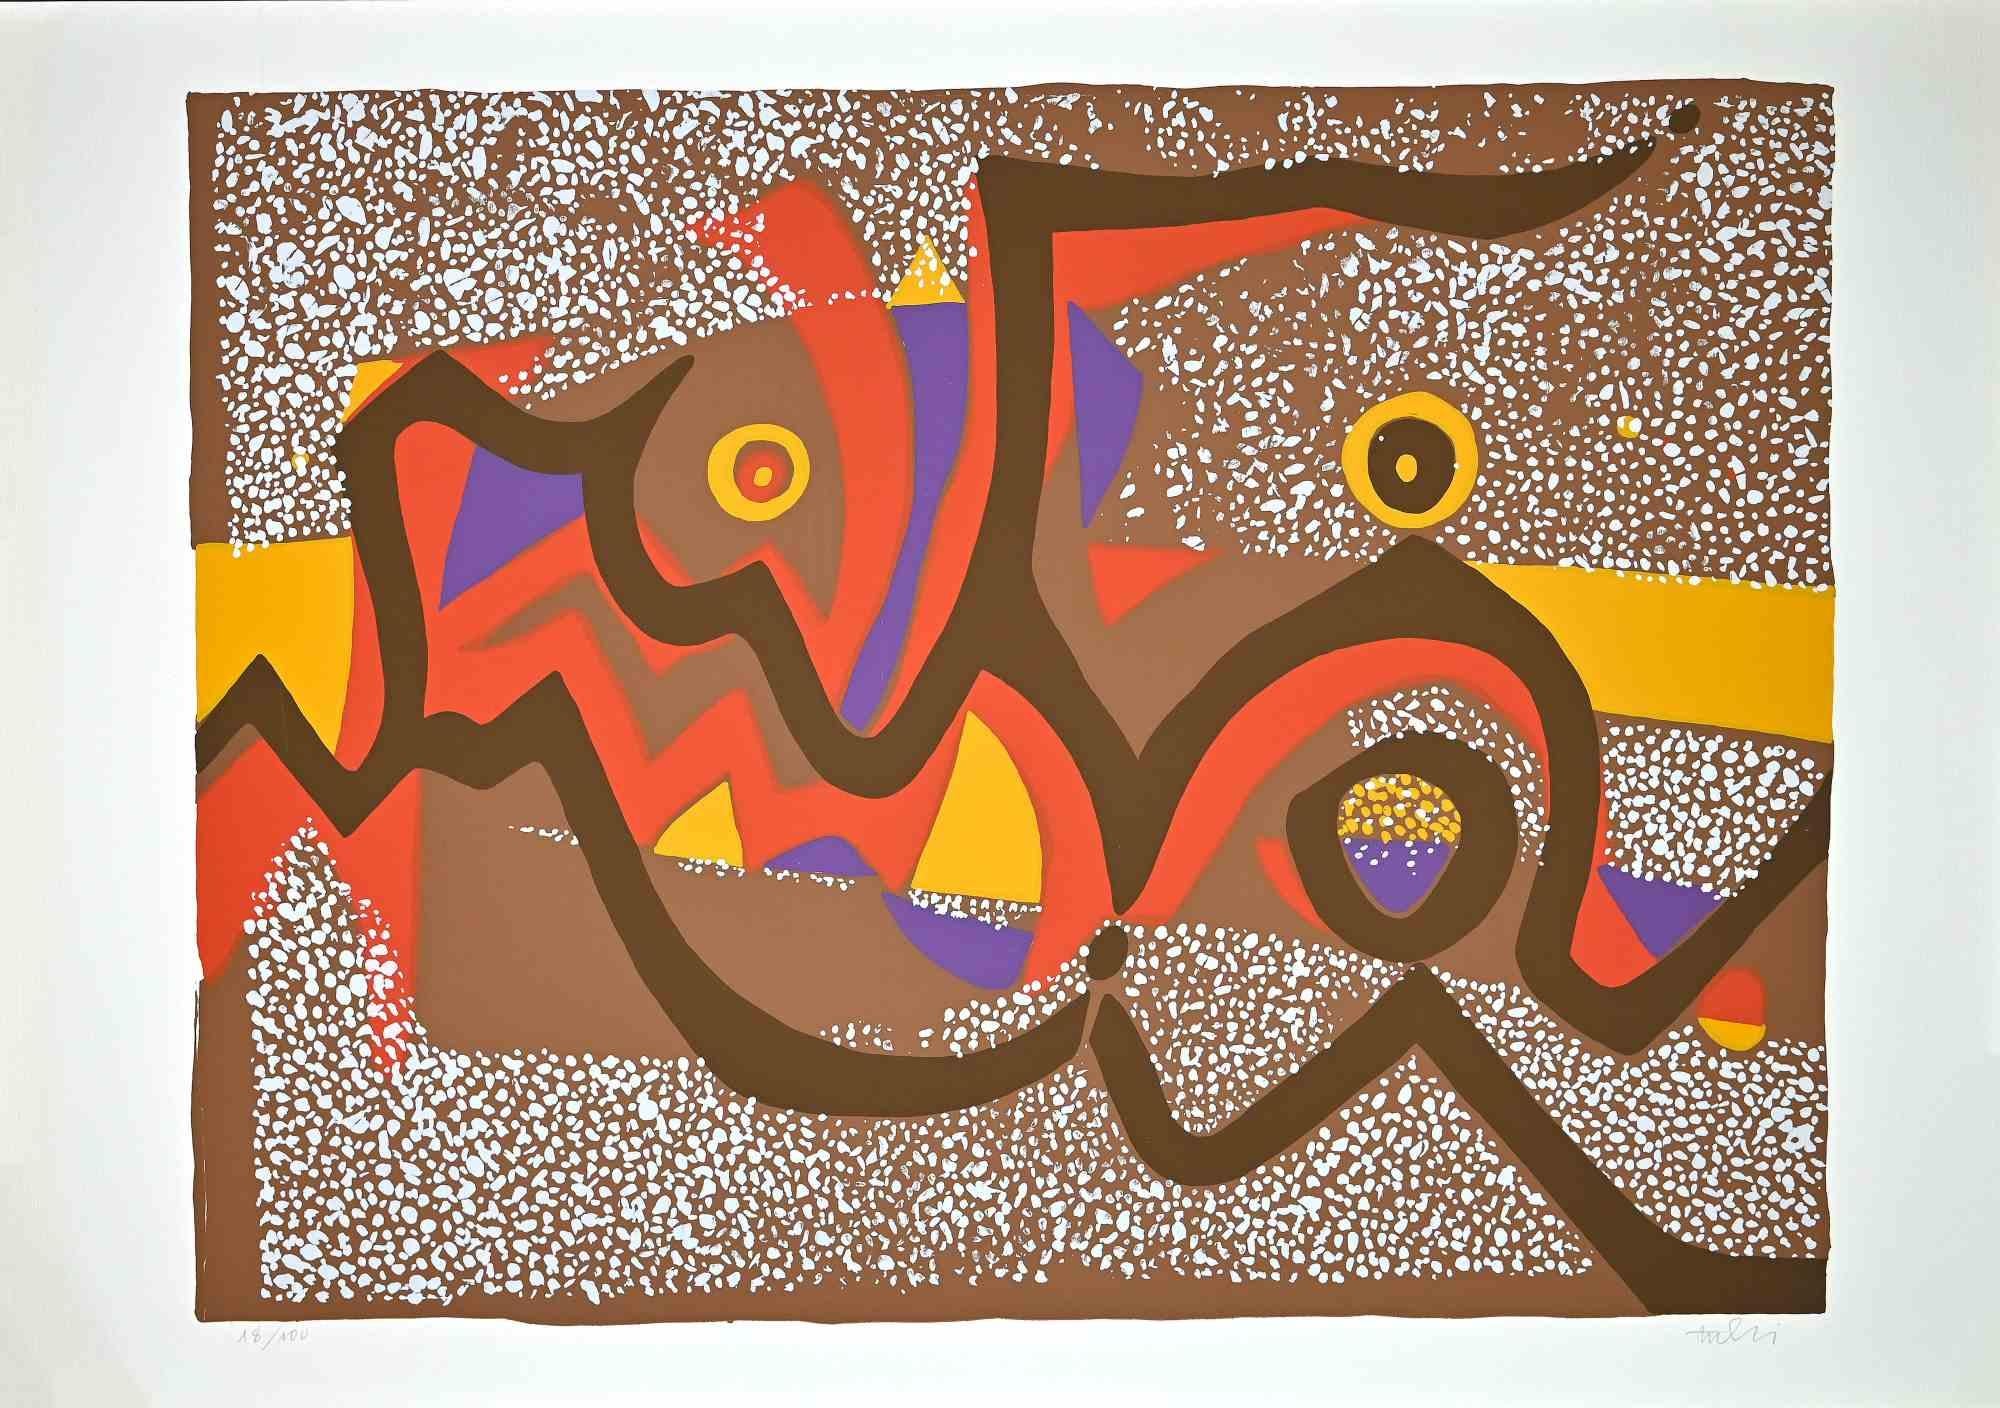 Composition brune est une sérigraphie colorée sur papier, réalisée dans les années 1970 par l'artiste italien  Wladimiro Tulli.
Signé à la main en bas à droite et numéroté au crayon dans la marge inférieure. Edition de 18/100 tirages. Bonnes